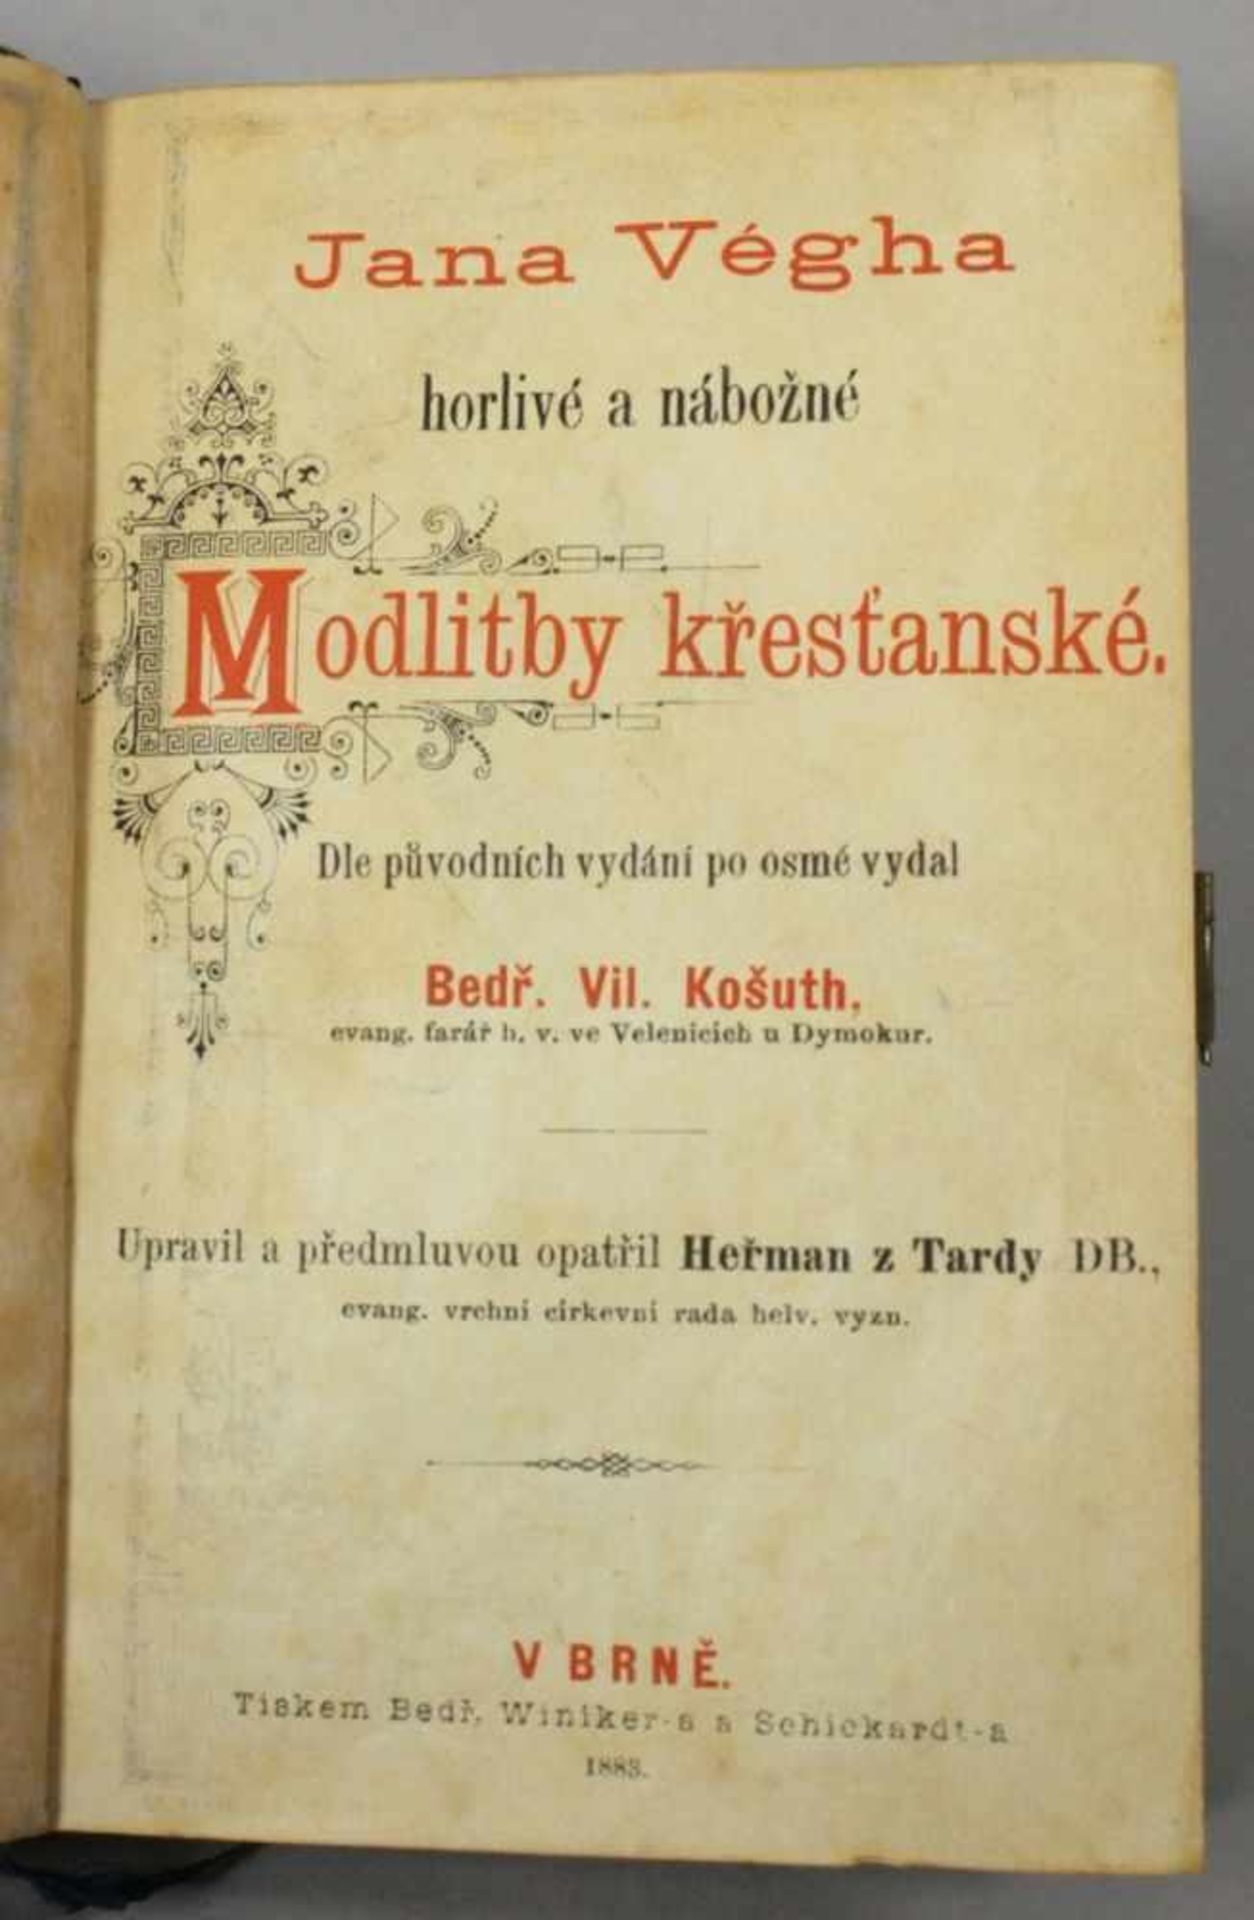 Buch, "Modlitby krestanske", 1883, Elfenbeineinband, Goldschnitt - Bild 2 aus 2